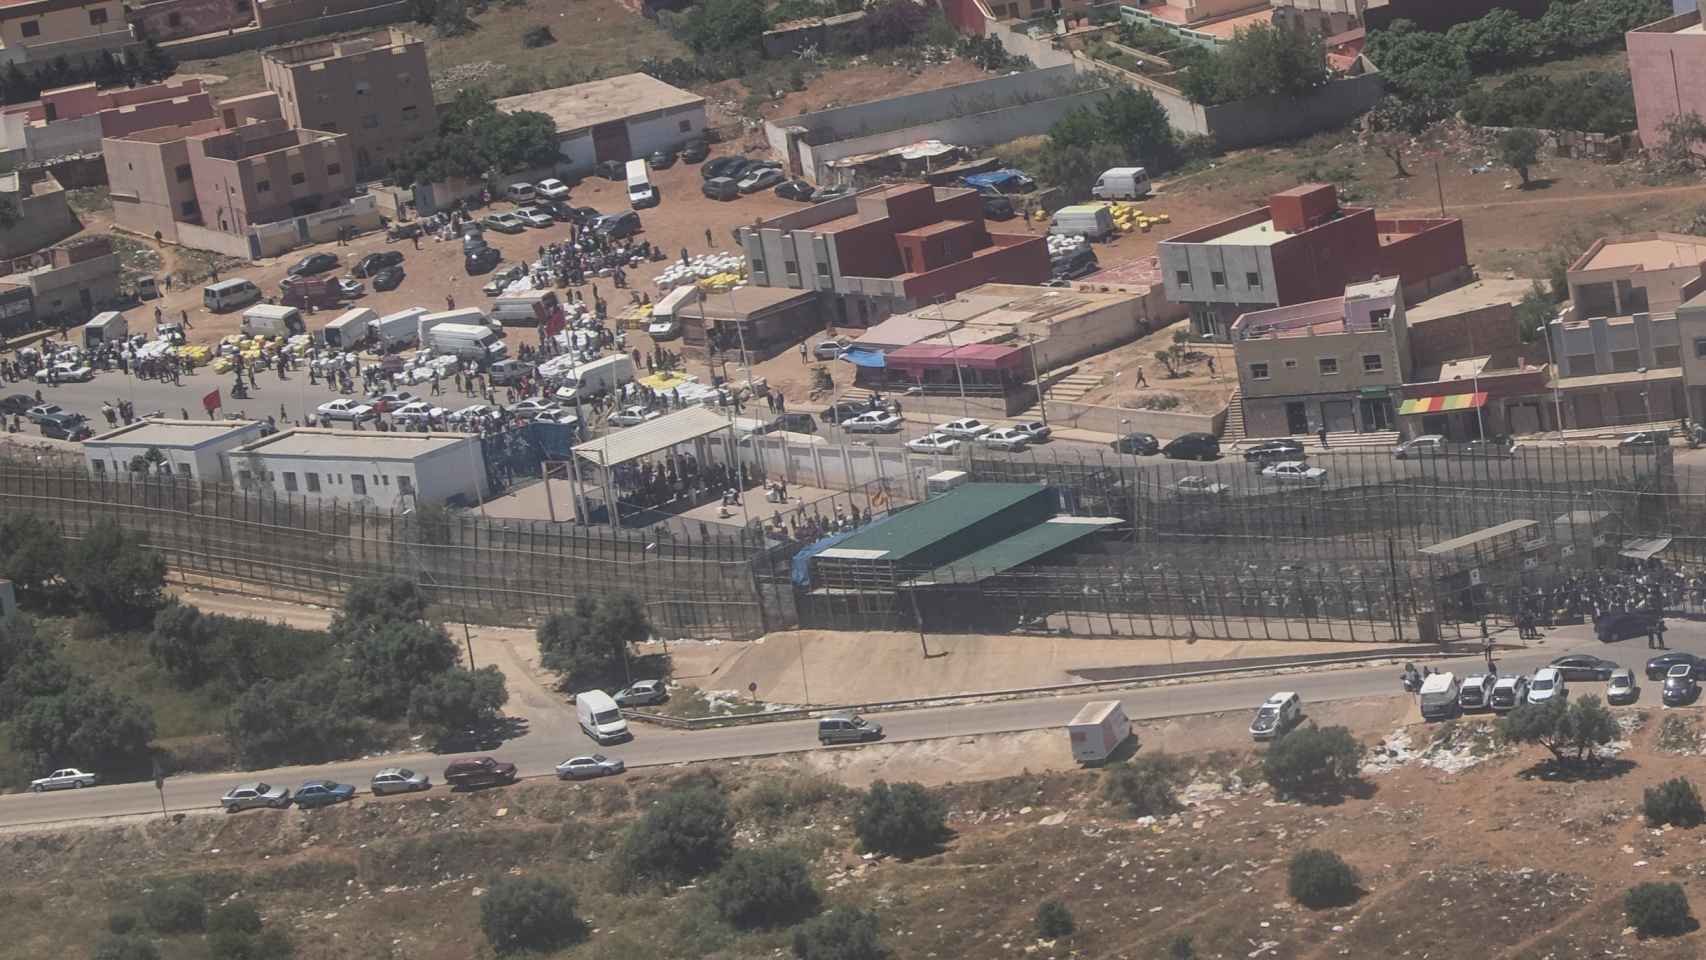 Vista aérea, en una foto de 2018, del paso fronterizo de Barrio Chino entre Marruecos y Melilla, donde ocurrió la tragedia del 24 de junio de 2022. A la izquierda, junto al techo blanco, la entrada marroquí; a su derecha, el techo verde indica la zona española de la aduana.